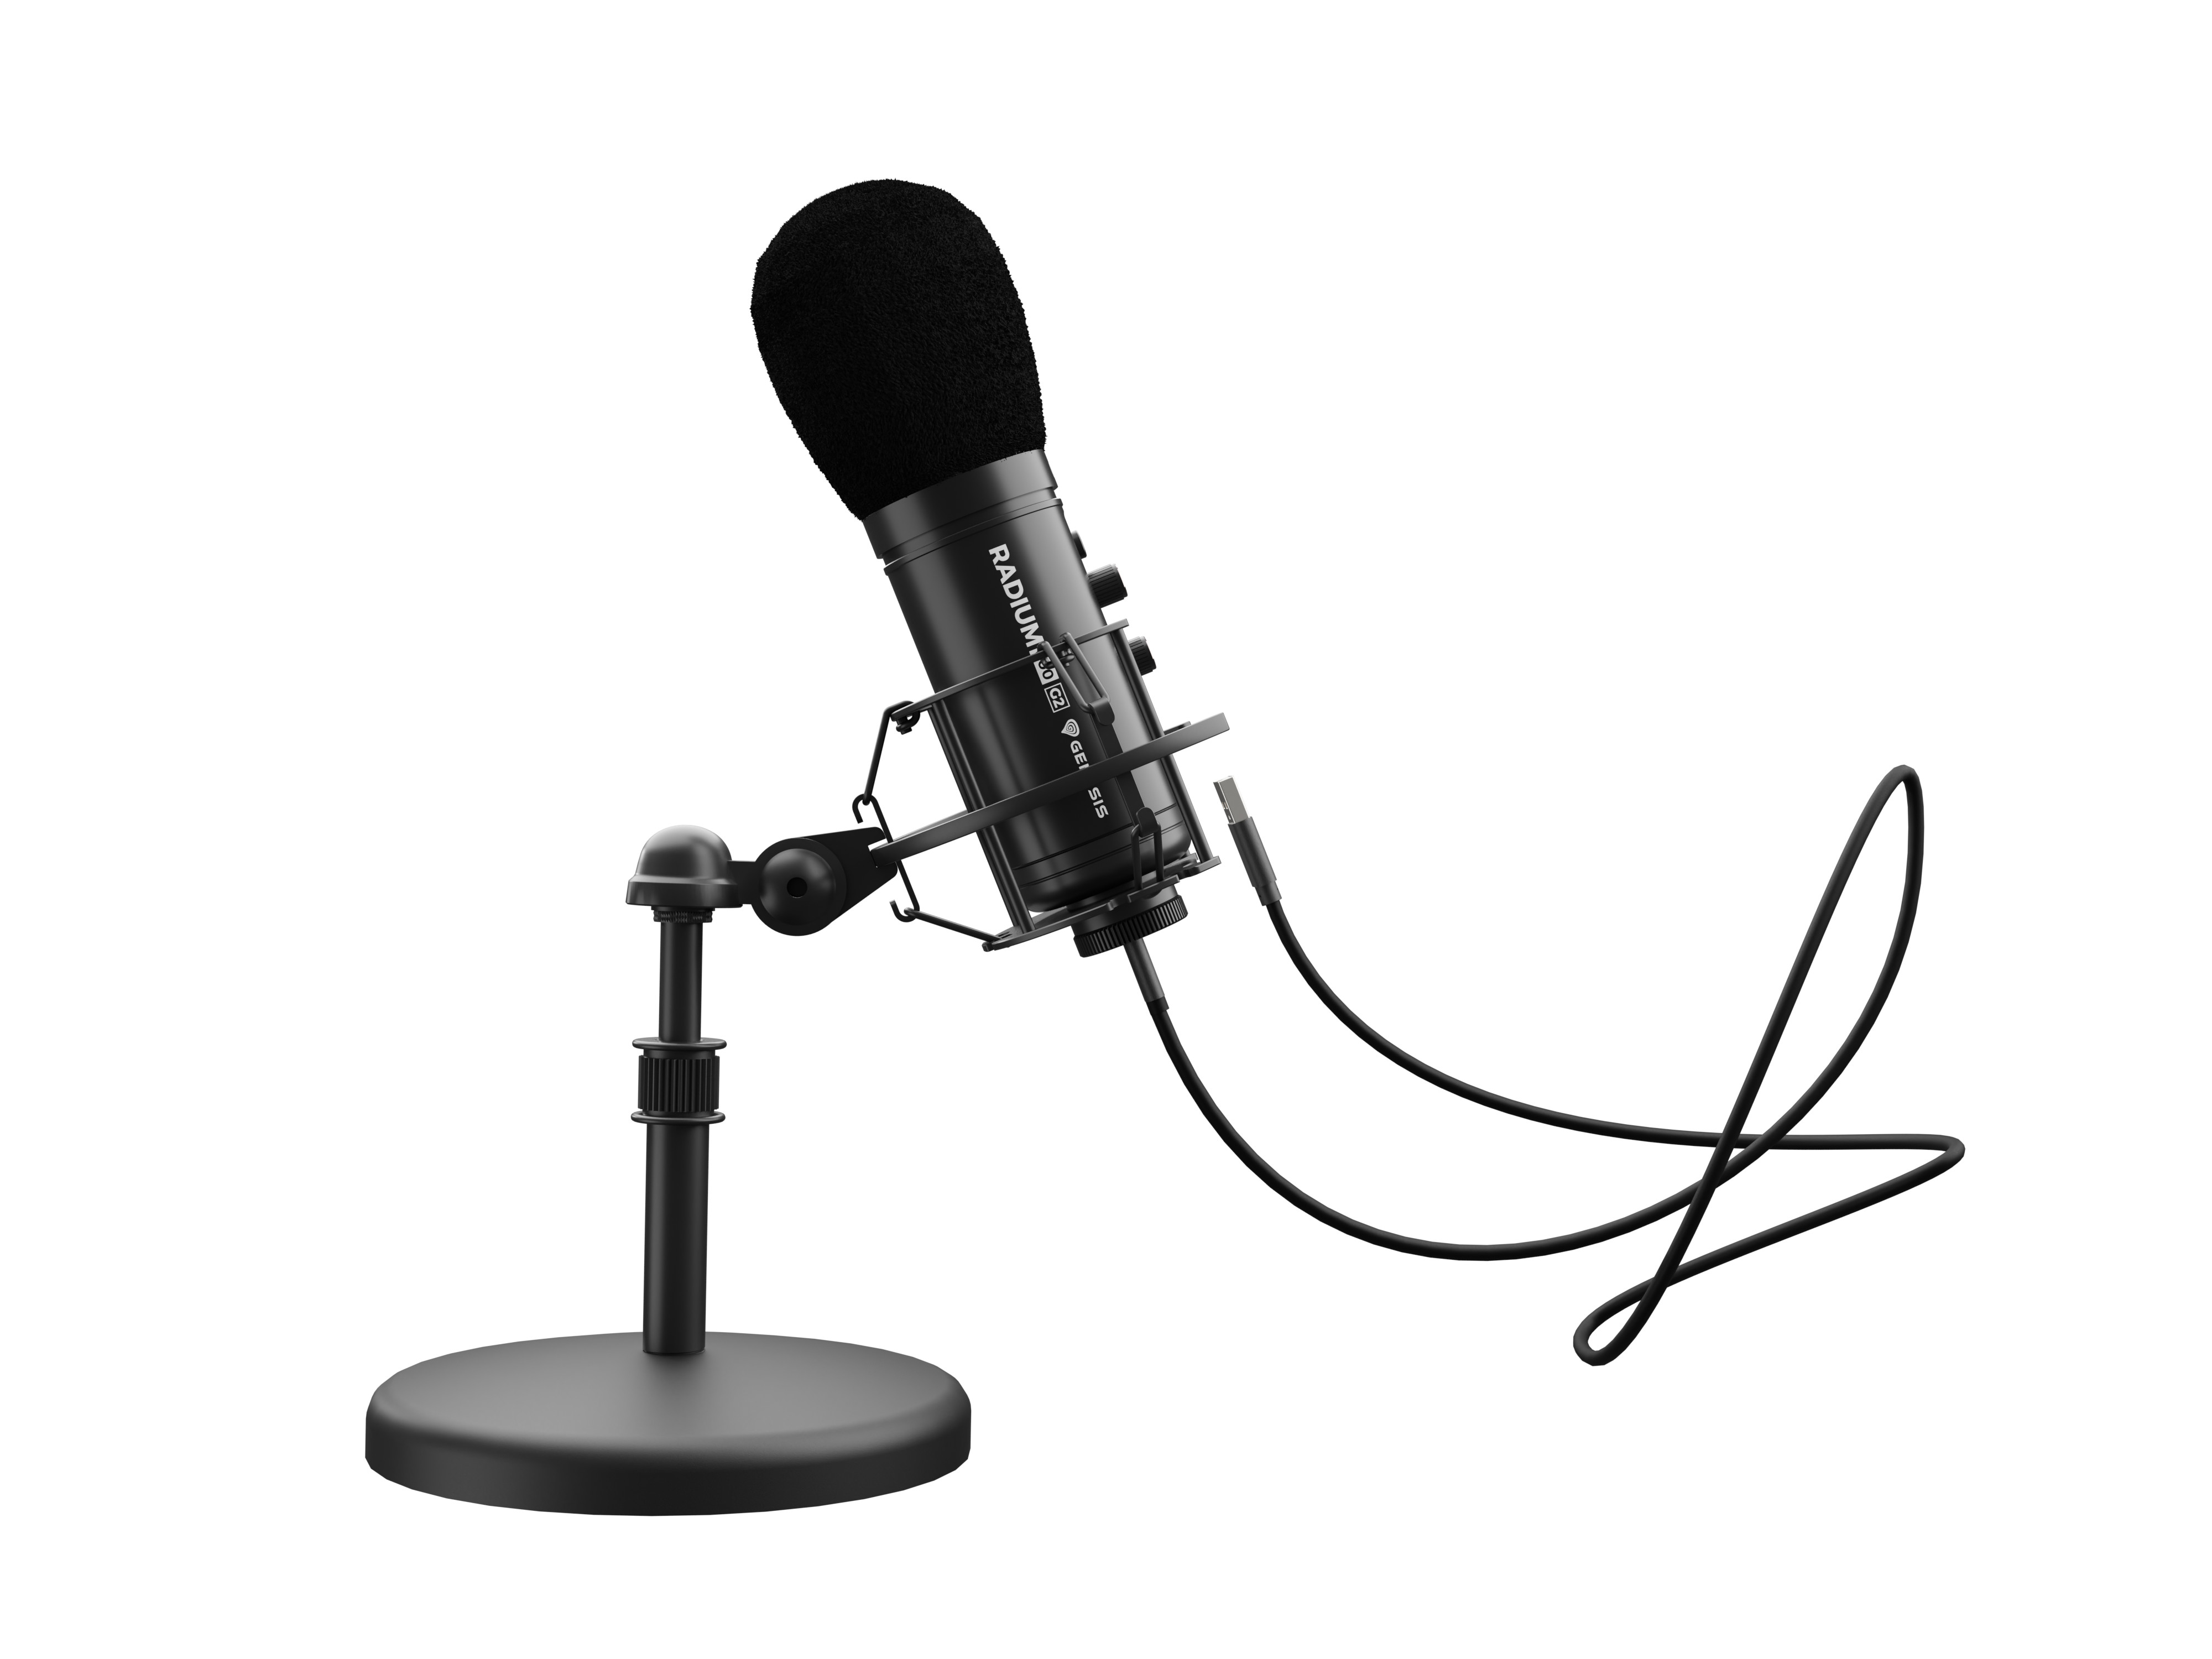 Streamovací mikrofon Genesis Radium 600 G2, USB